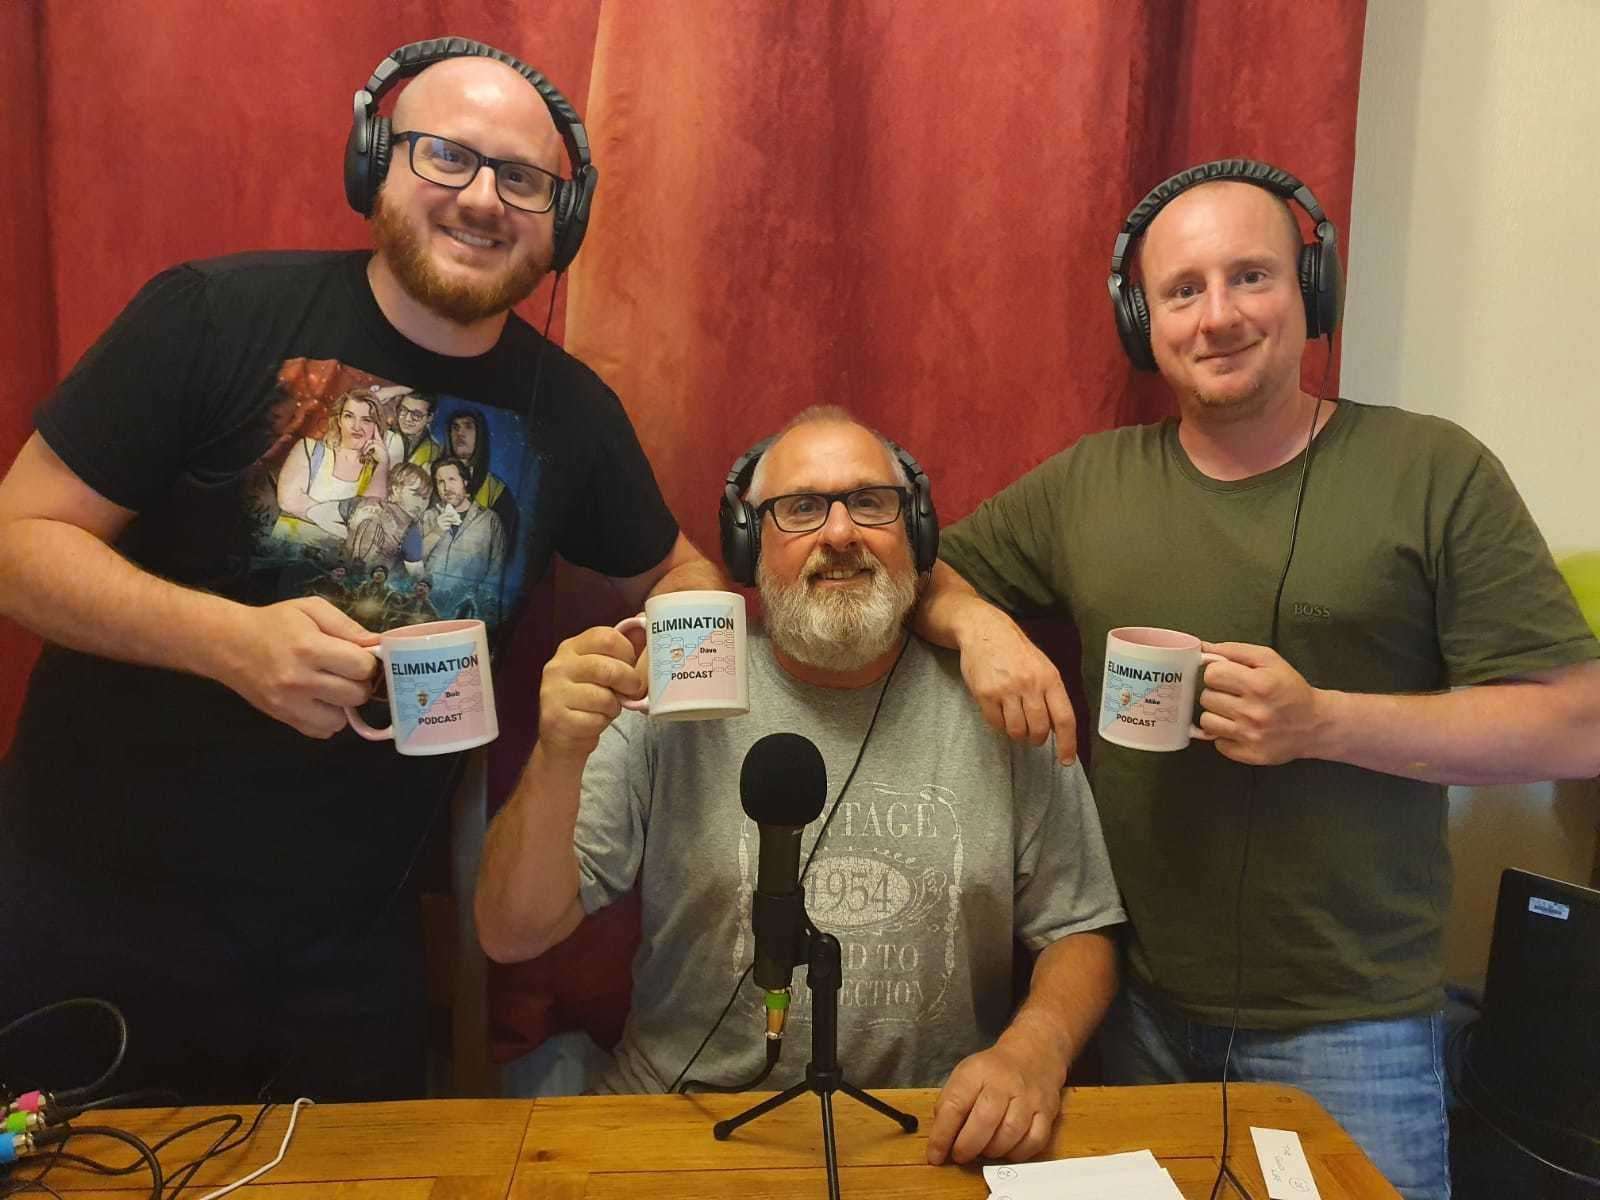 The team behind the Elimination podcast – (from left) Robert Rivett, Dave Rivett and Mike Rivett. Picture: Robert Rivett